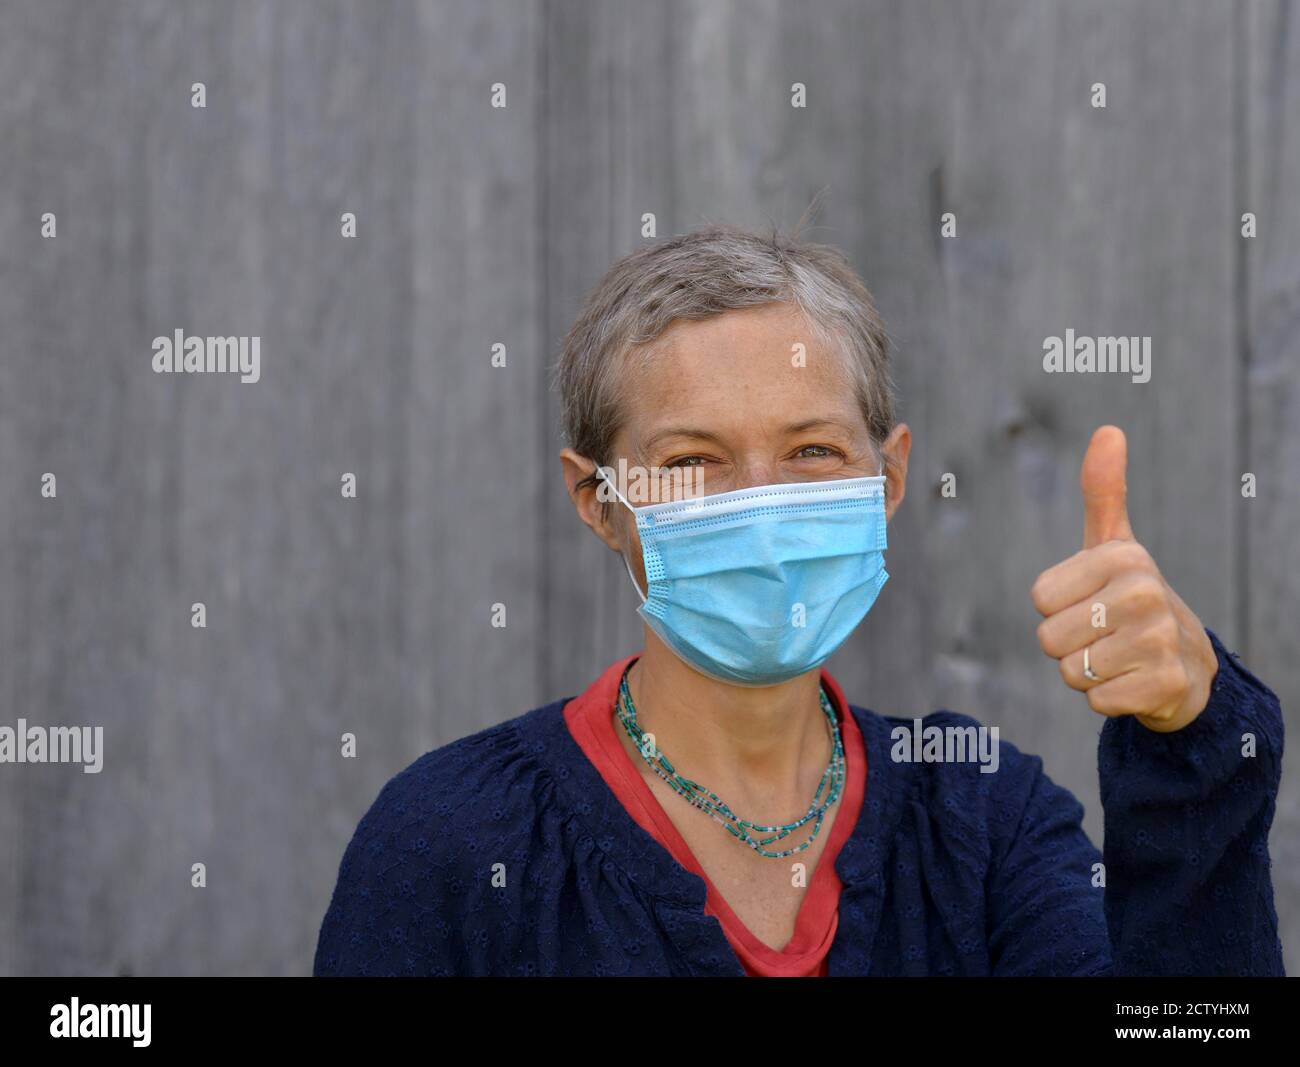 Die kaukasische Frau mittleren Alters mit kurzen Haaren trägt eine blaue chirurgische Gesichtsmaske und gibt während der Corona-Virus-Pandemie von 2019/20 das Daumen-up-Zeichen. Stockfoto